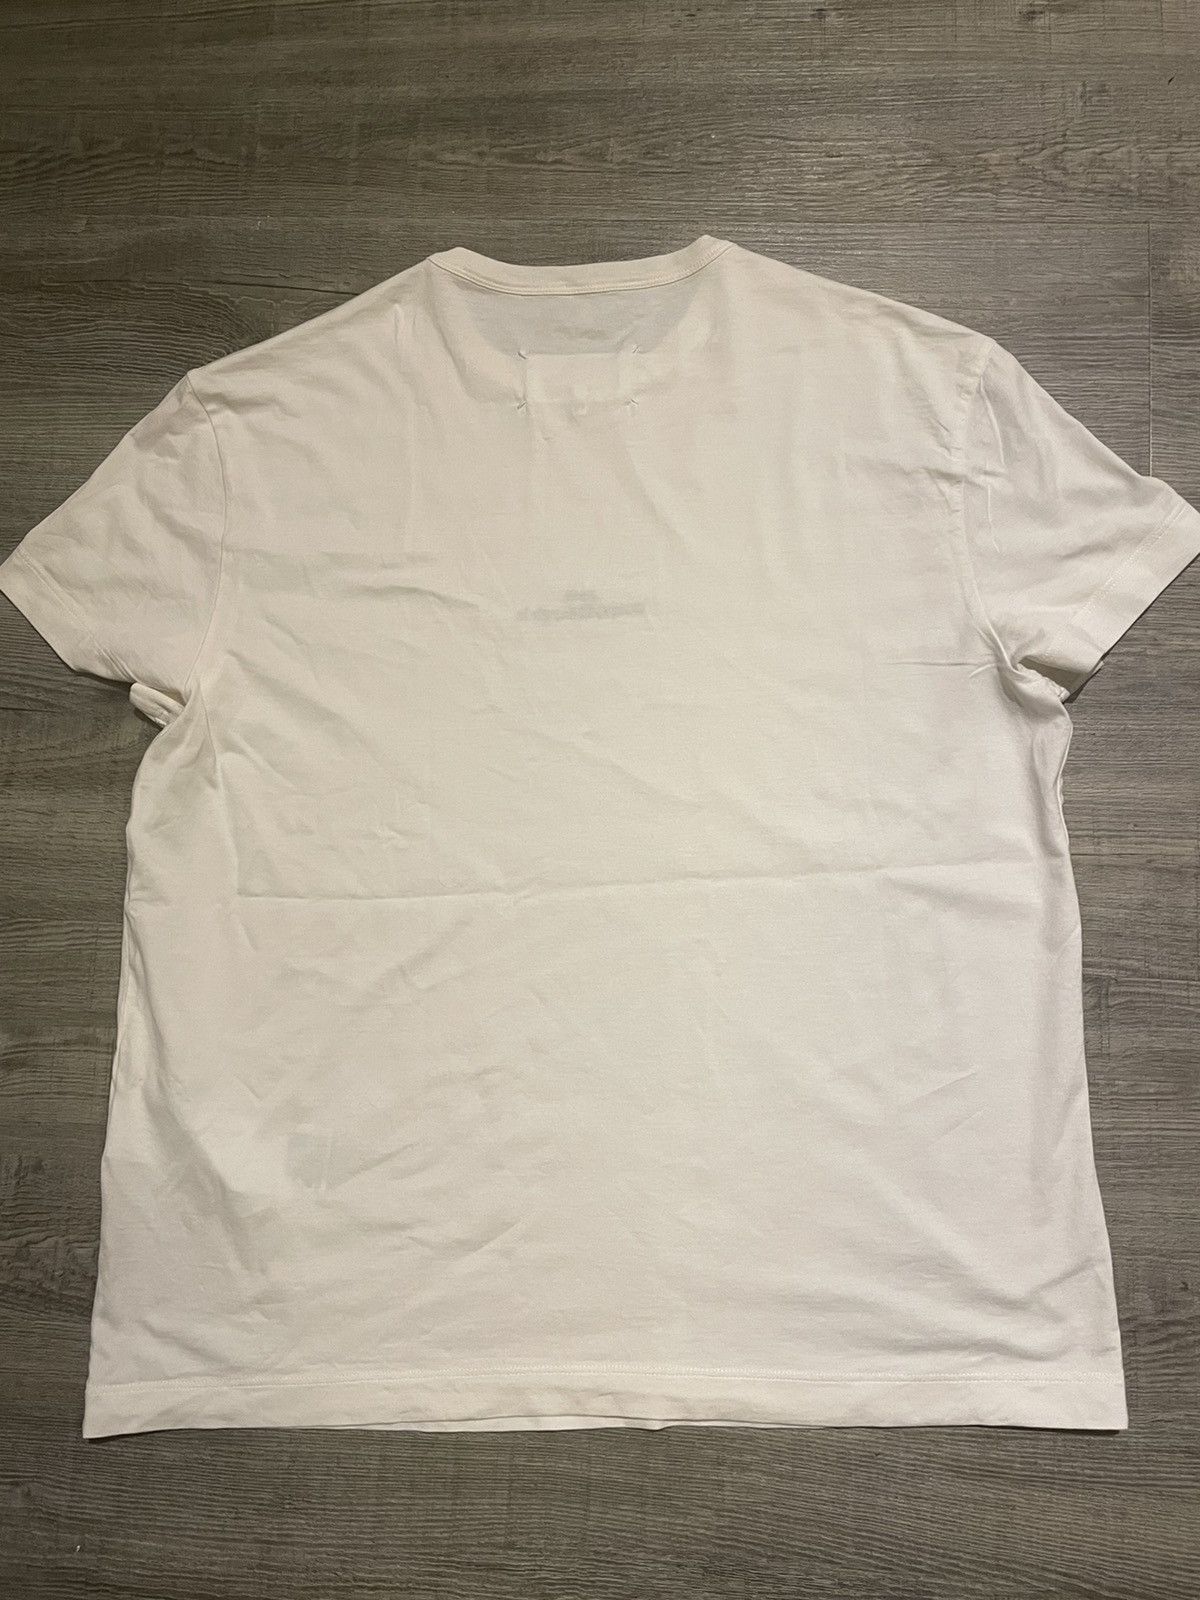 Maison Margiela Maison Margiela White Cotton T-Shirt Size US S / EU 44-46 / 1 - 6 Preview